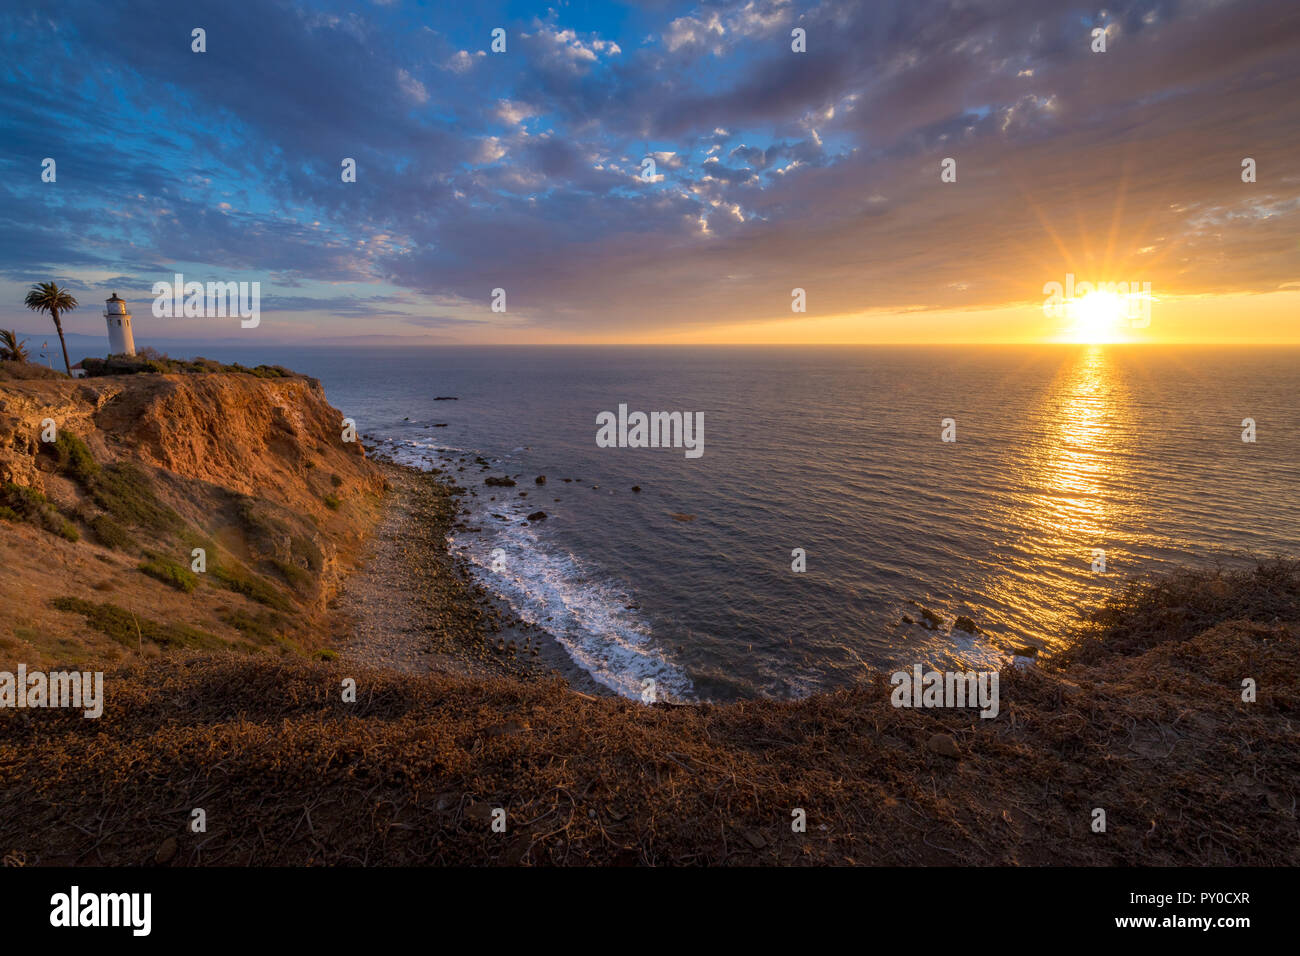 Belle vue sur la côte de Vicente Lighthouse Point au sommet de la falaise abrupte de Rancho Palos Verdes, California au coucher du soleil Banque D'Images